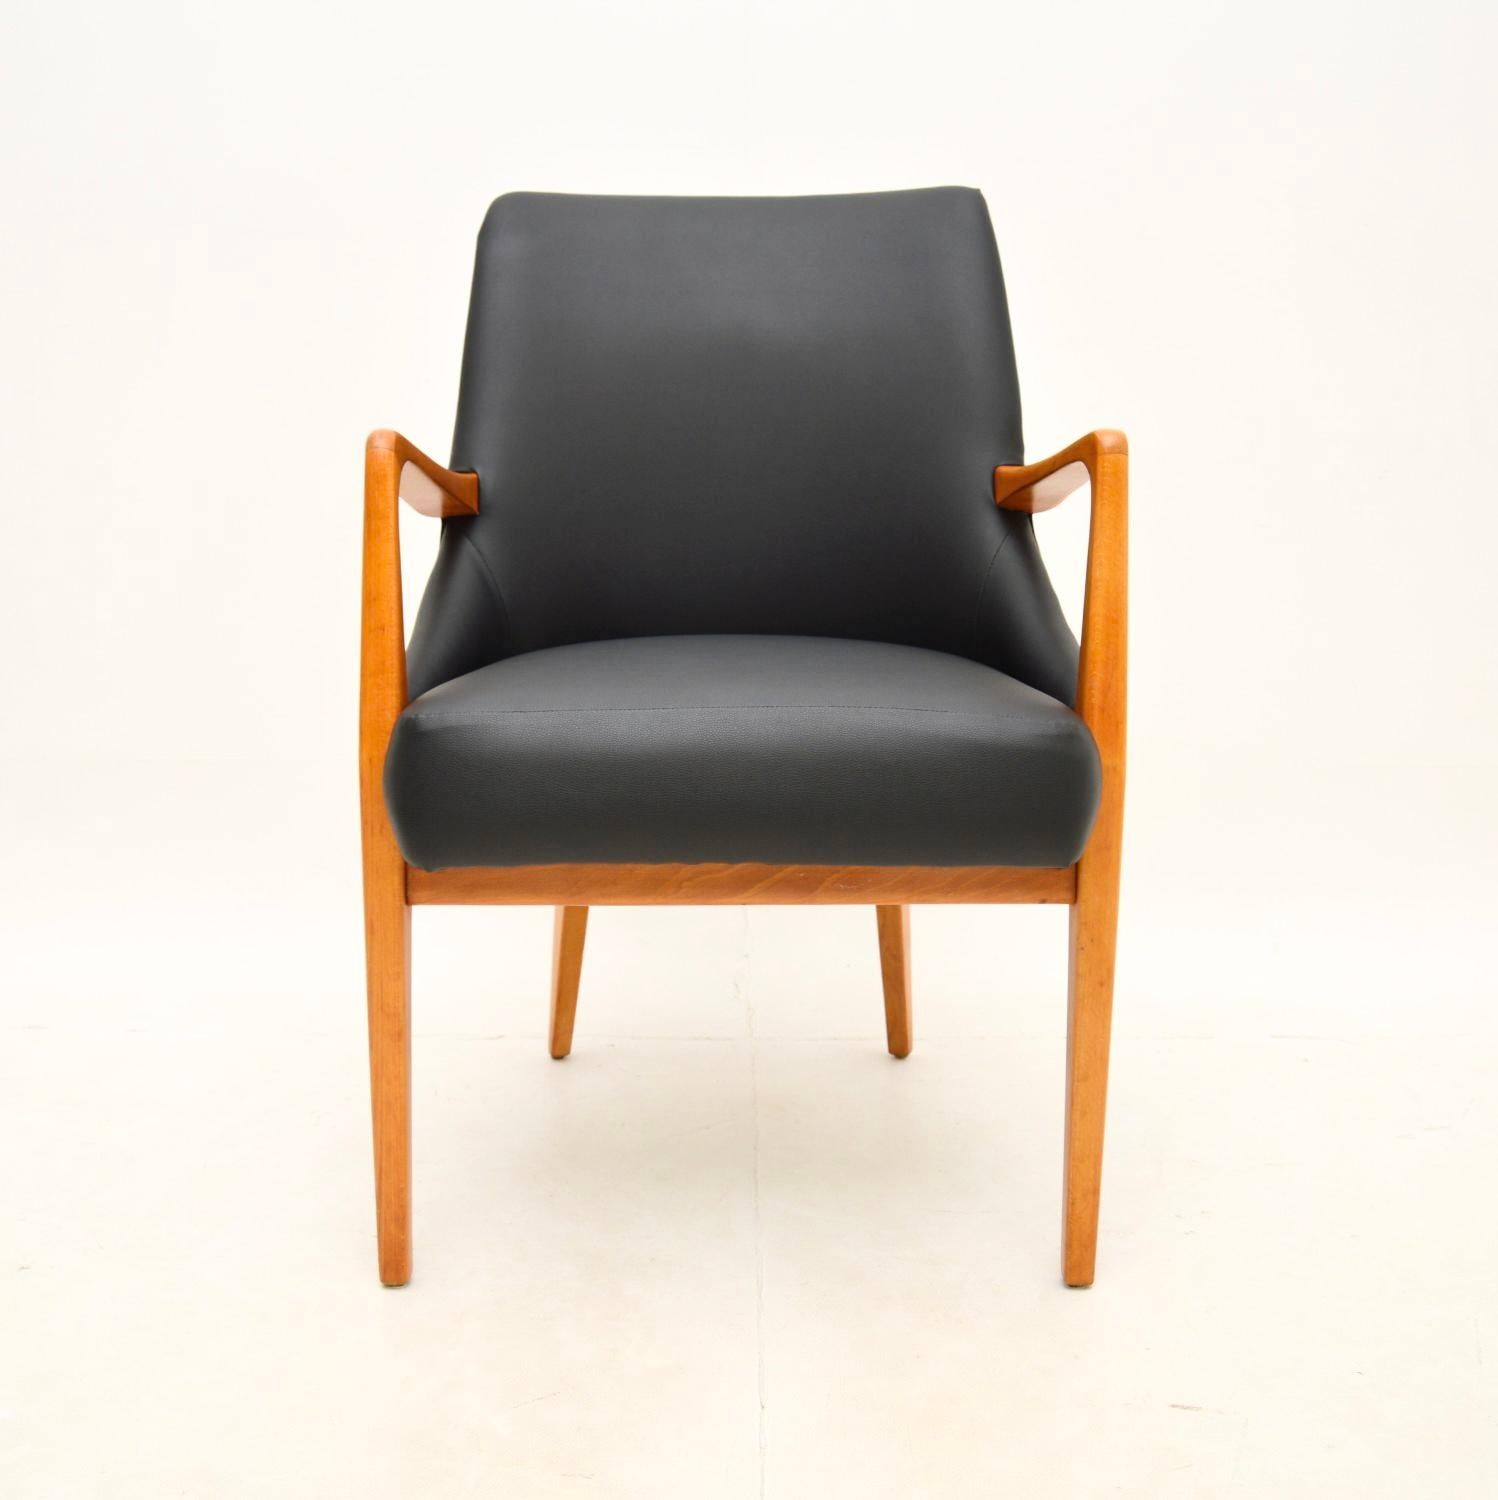 Une chaise de bureau / un fauteuil danois vintage très élégant et extrêmement confortable. Fabriqué au Danemark, il date des années 1960.

Il est d'une superbe qualité, avec une construction robuste et un beau design. Sa taille est parfaite pour